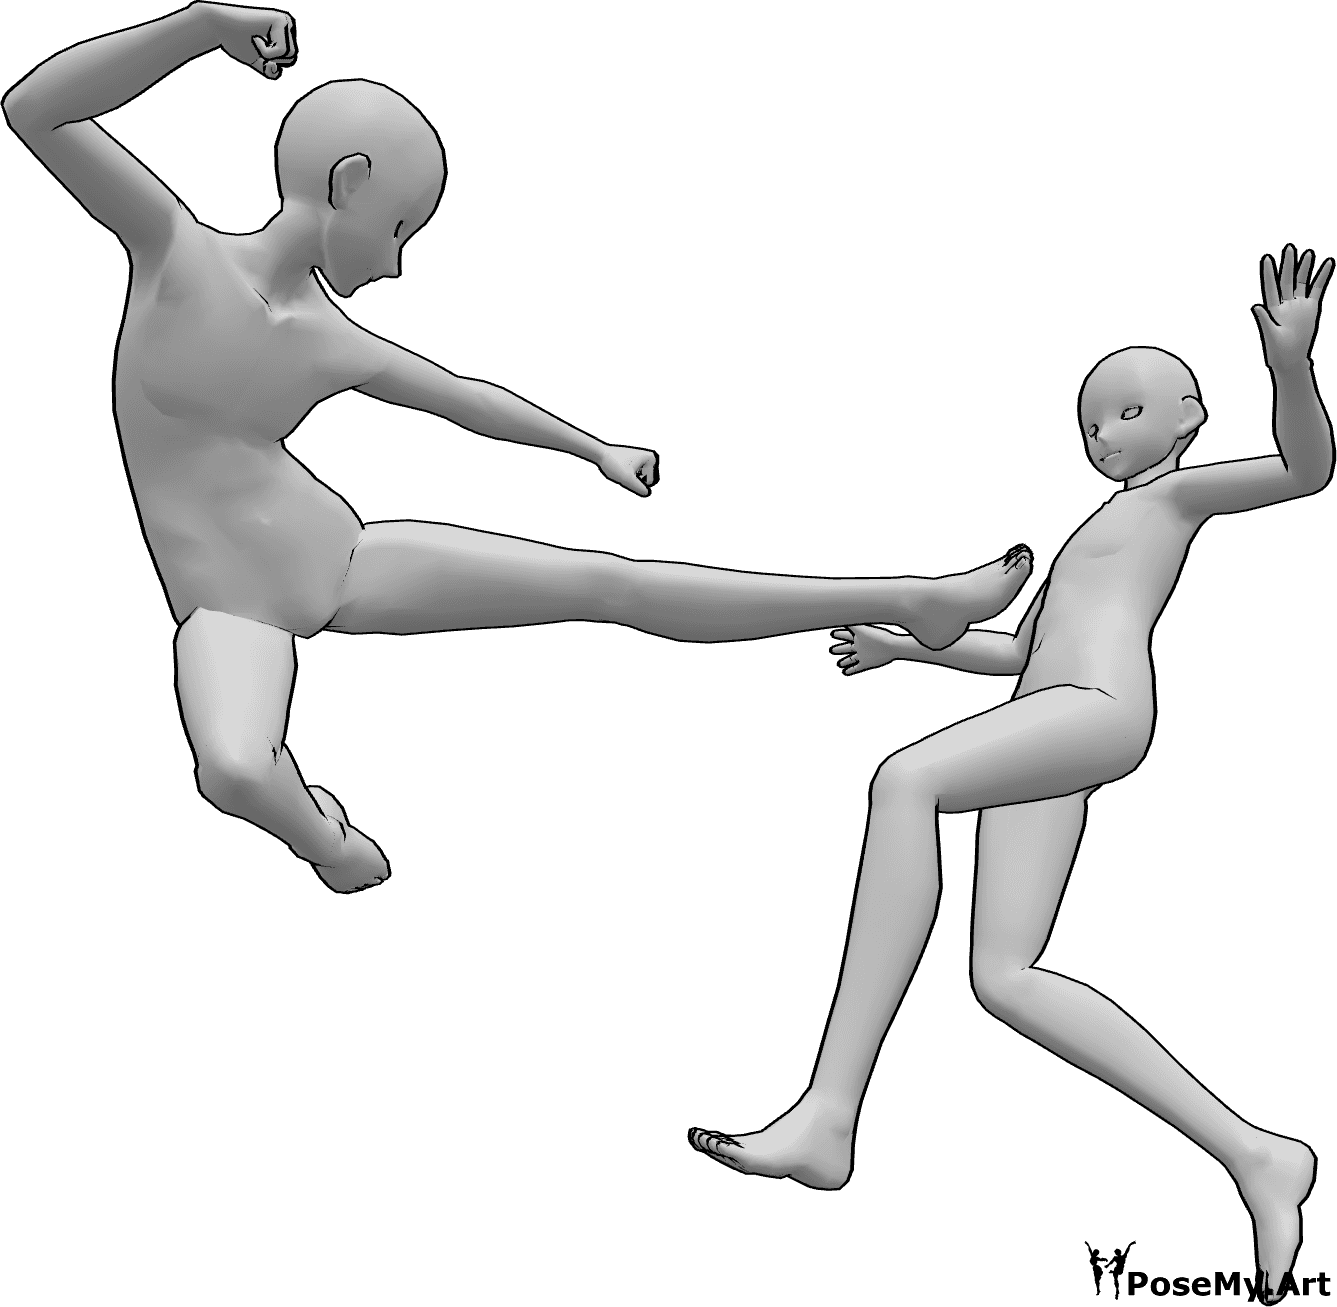 Referência de poses- Pose de pontapé de luta de anime - Os machos de anime estão a lutar, um deles salta alto para dar um pontapé lateral